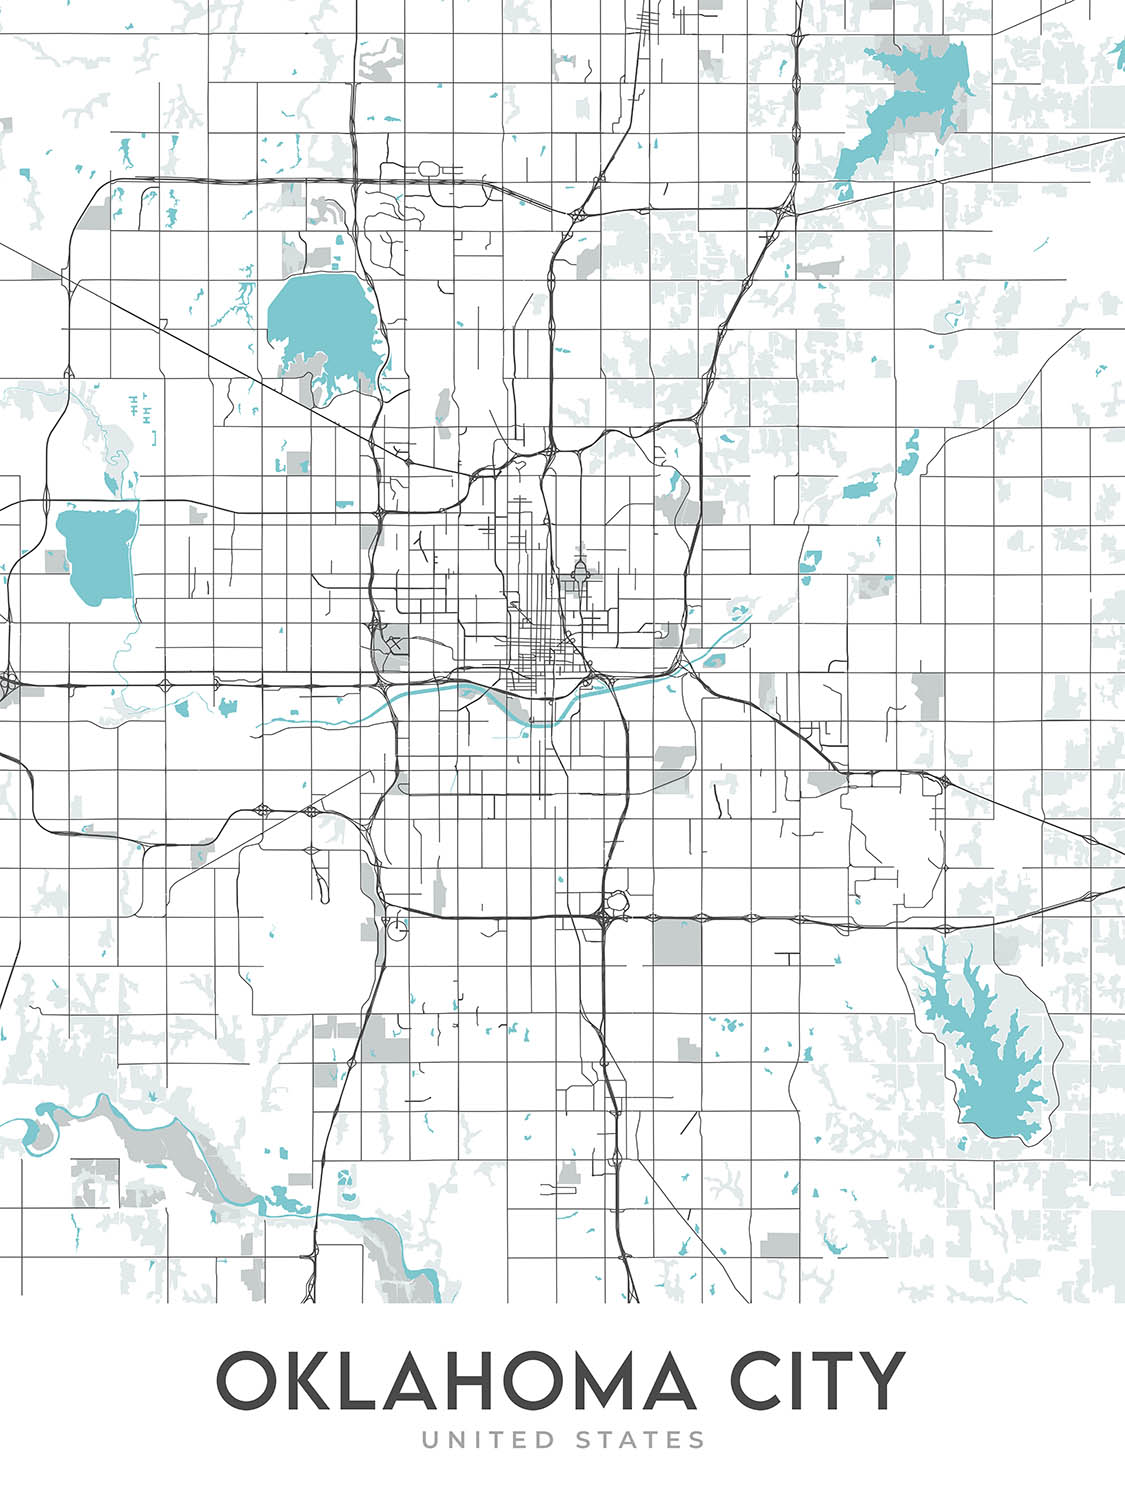 Mapa moderno de la ciudad de Oklahoma City, OK: Centro, Bricktown, Paseo, Midtown, Capitol